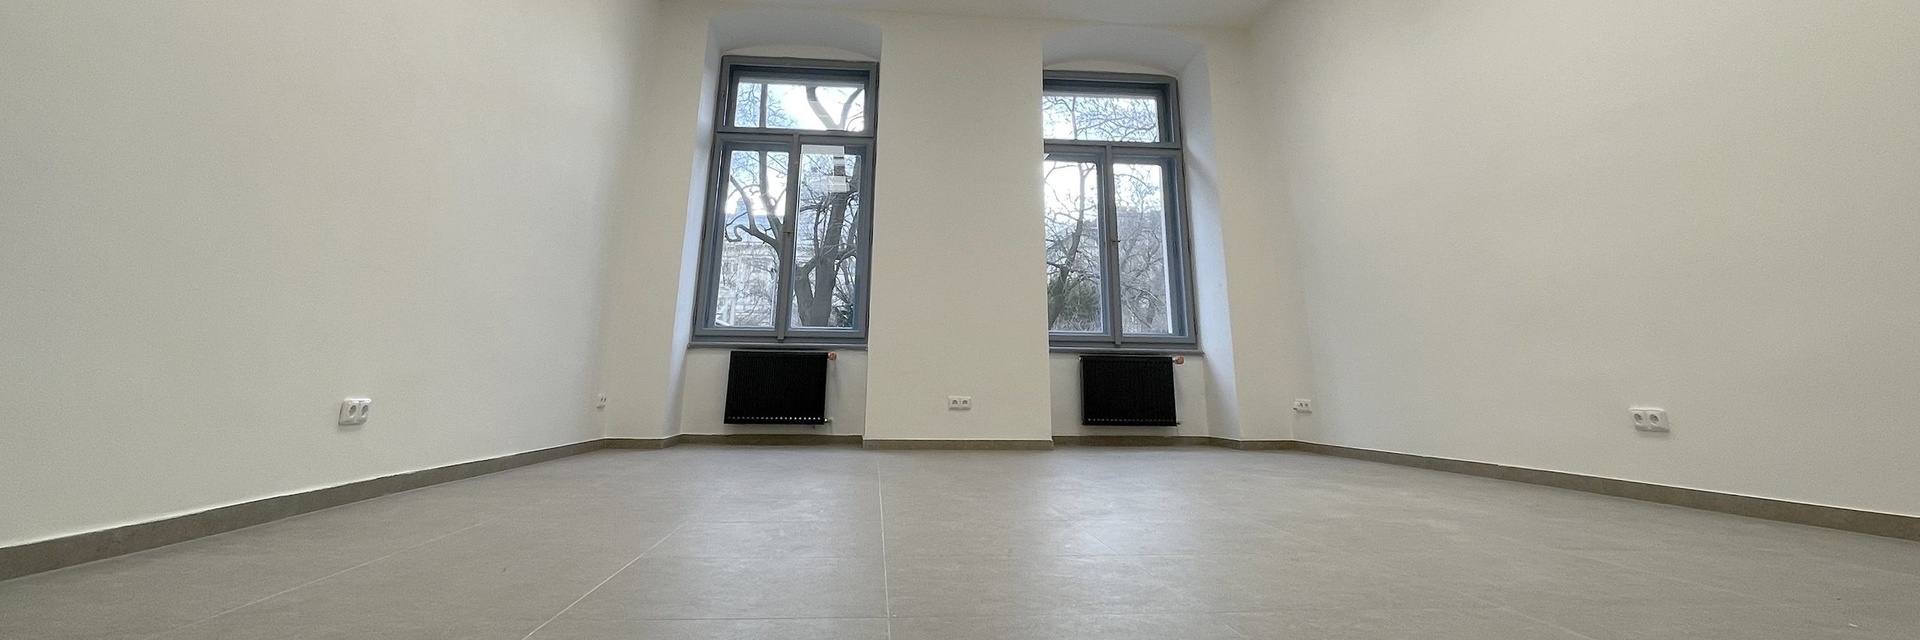 Pronájem komerčního prostoru pro ordinaci, 123 m², ulice Koliště, Brno